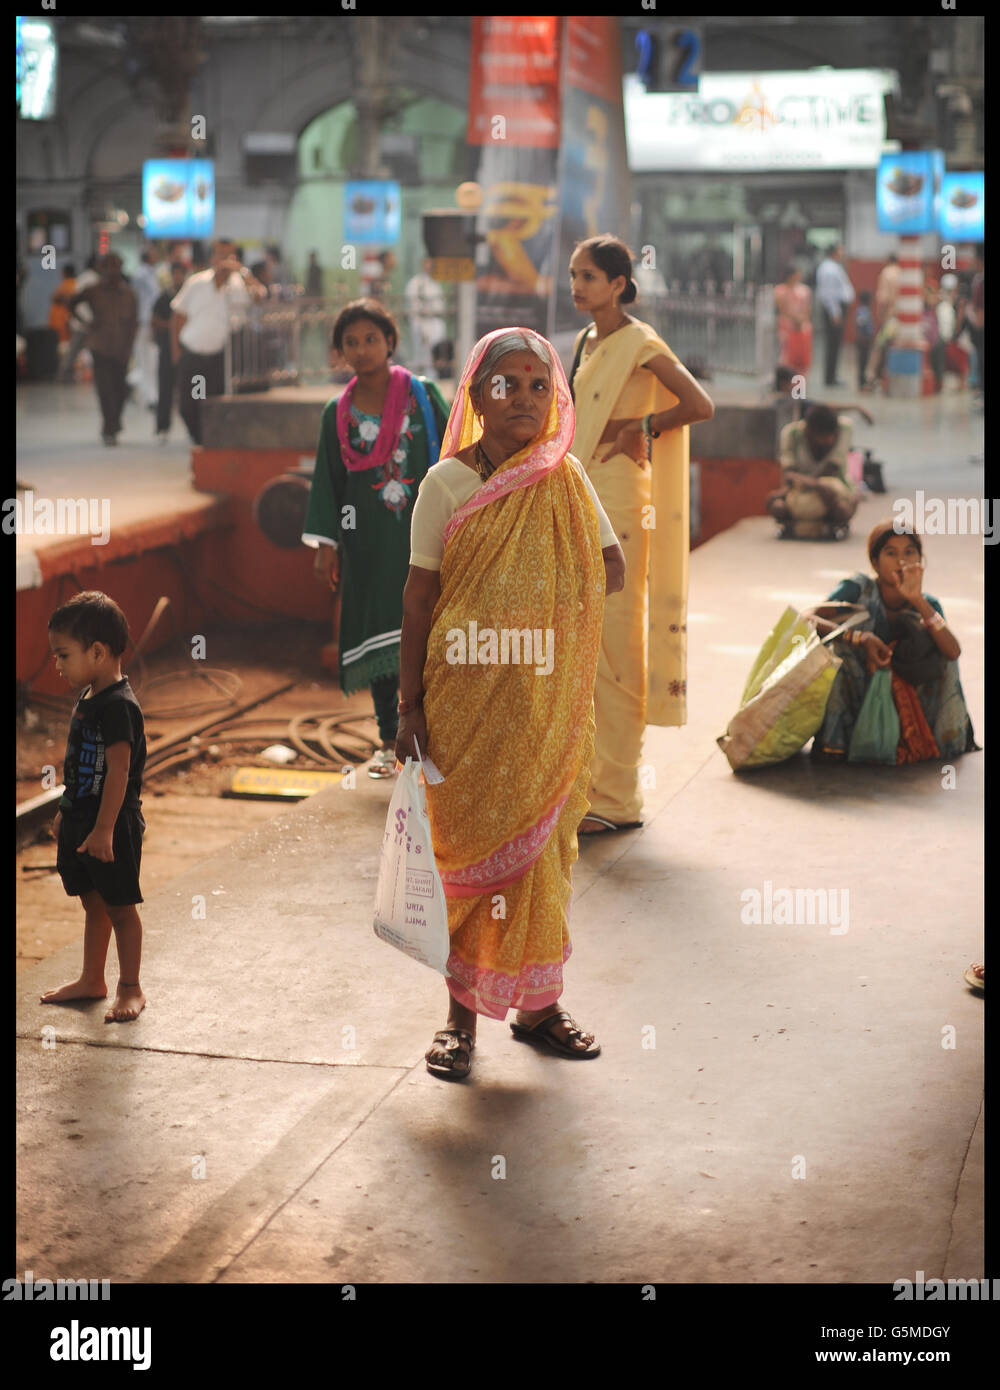 Fotografie di scorta di Mumbai STAMPA ASSOCIAZIONE foto. Data immagine: Domenica 2 dicembre 2012. Vedere la storia di PA. Il credito fotografico dovrebbe essere: Stefan Rousseau/PA Foto Stock